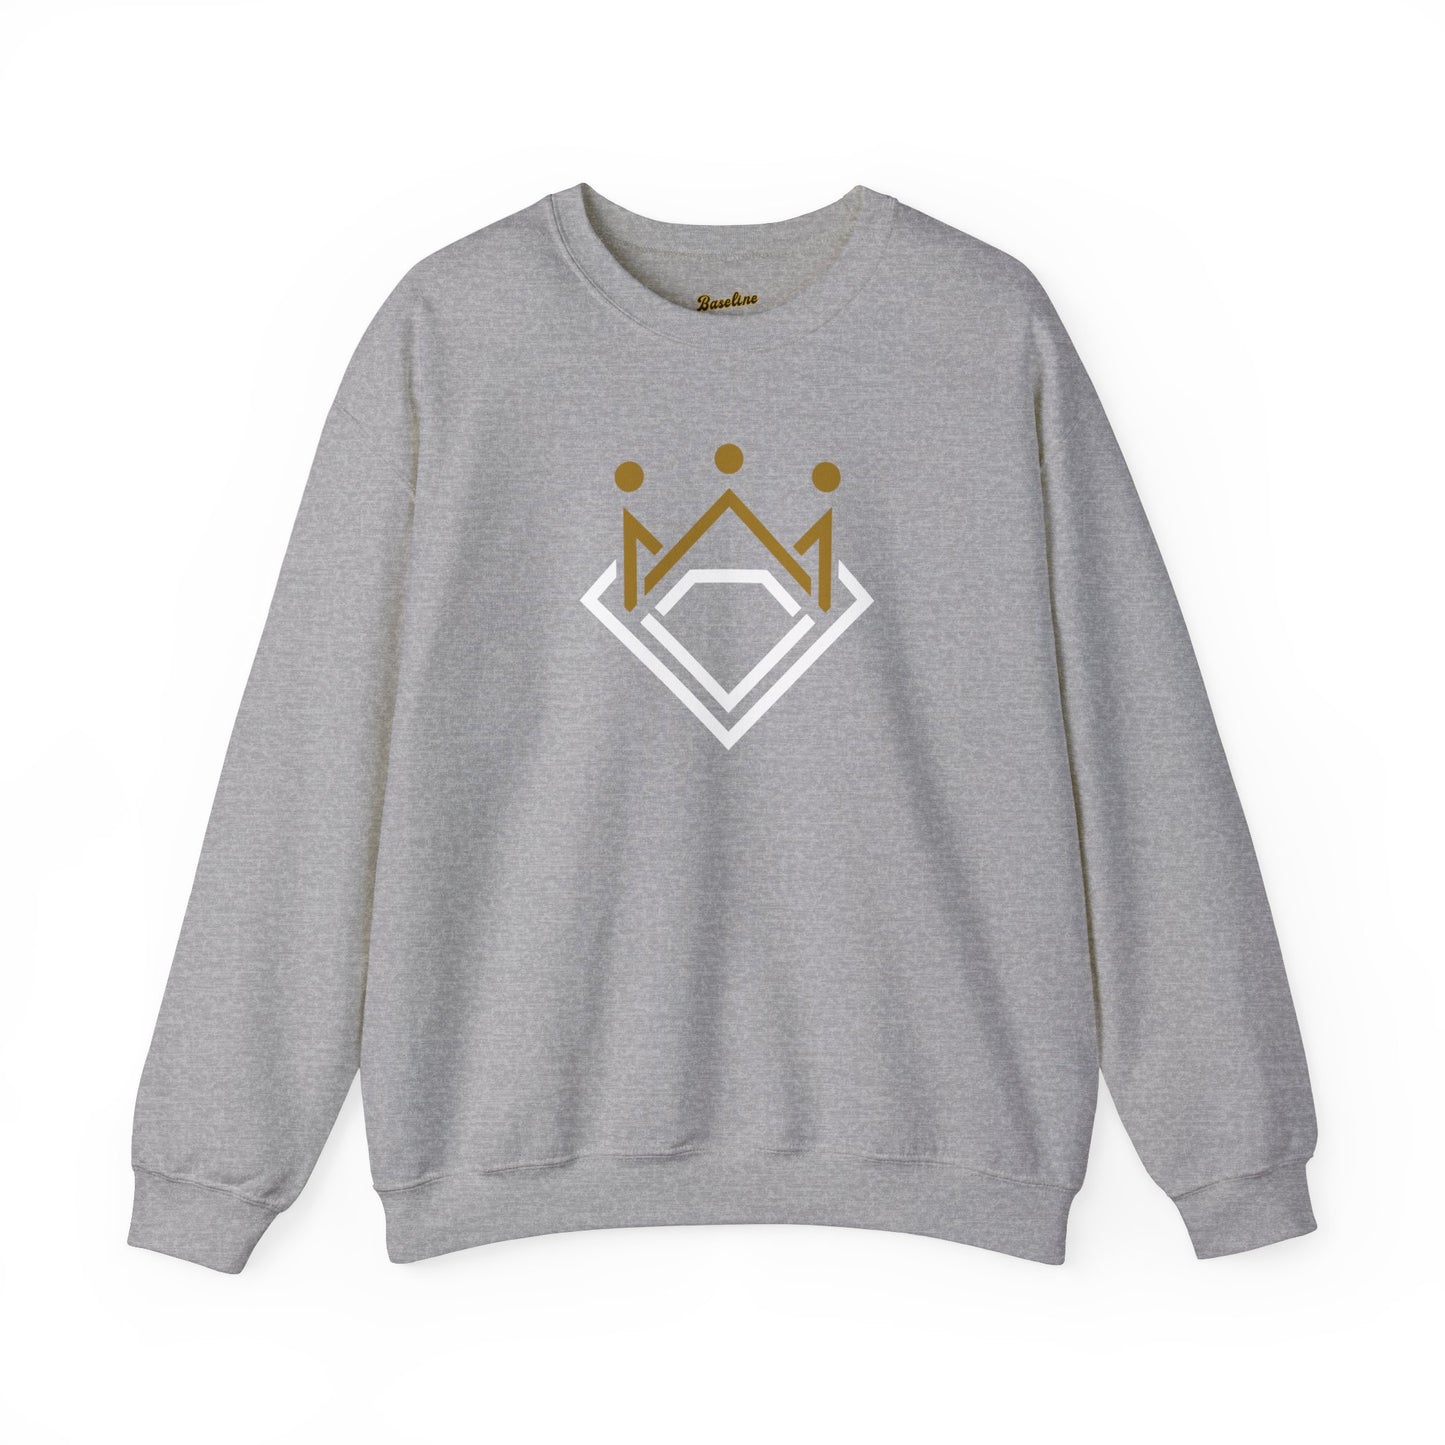 Baseline Clothing Co. King of Diamonds Crewneck Sweatshirt